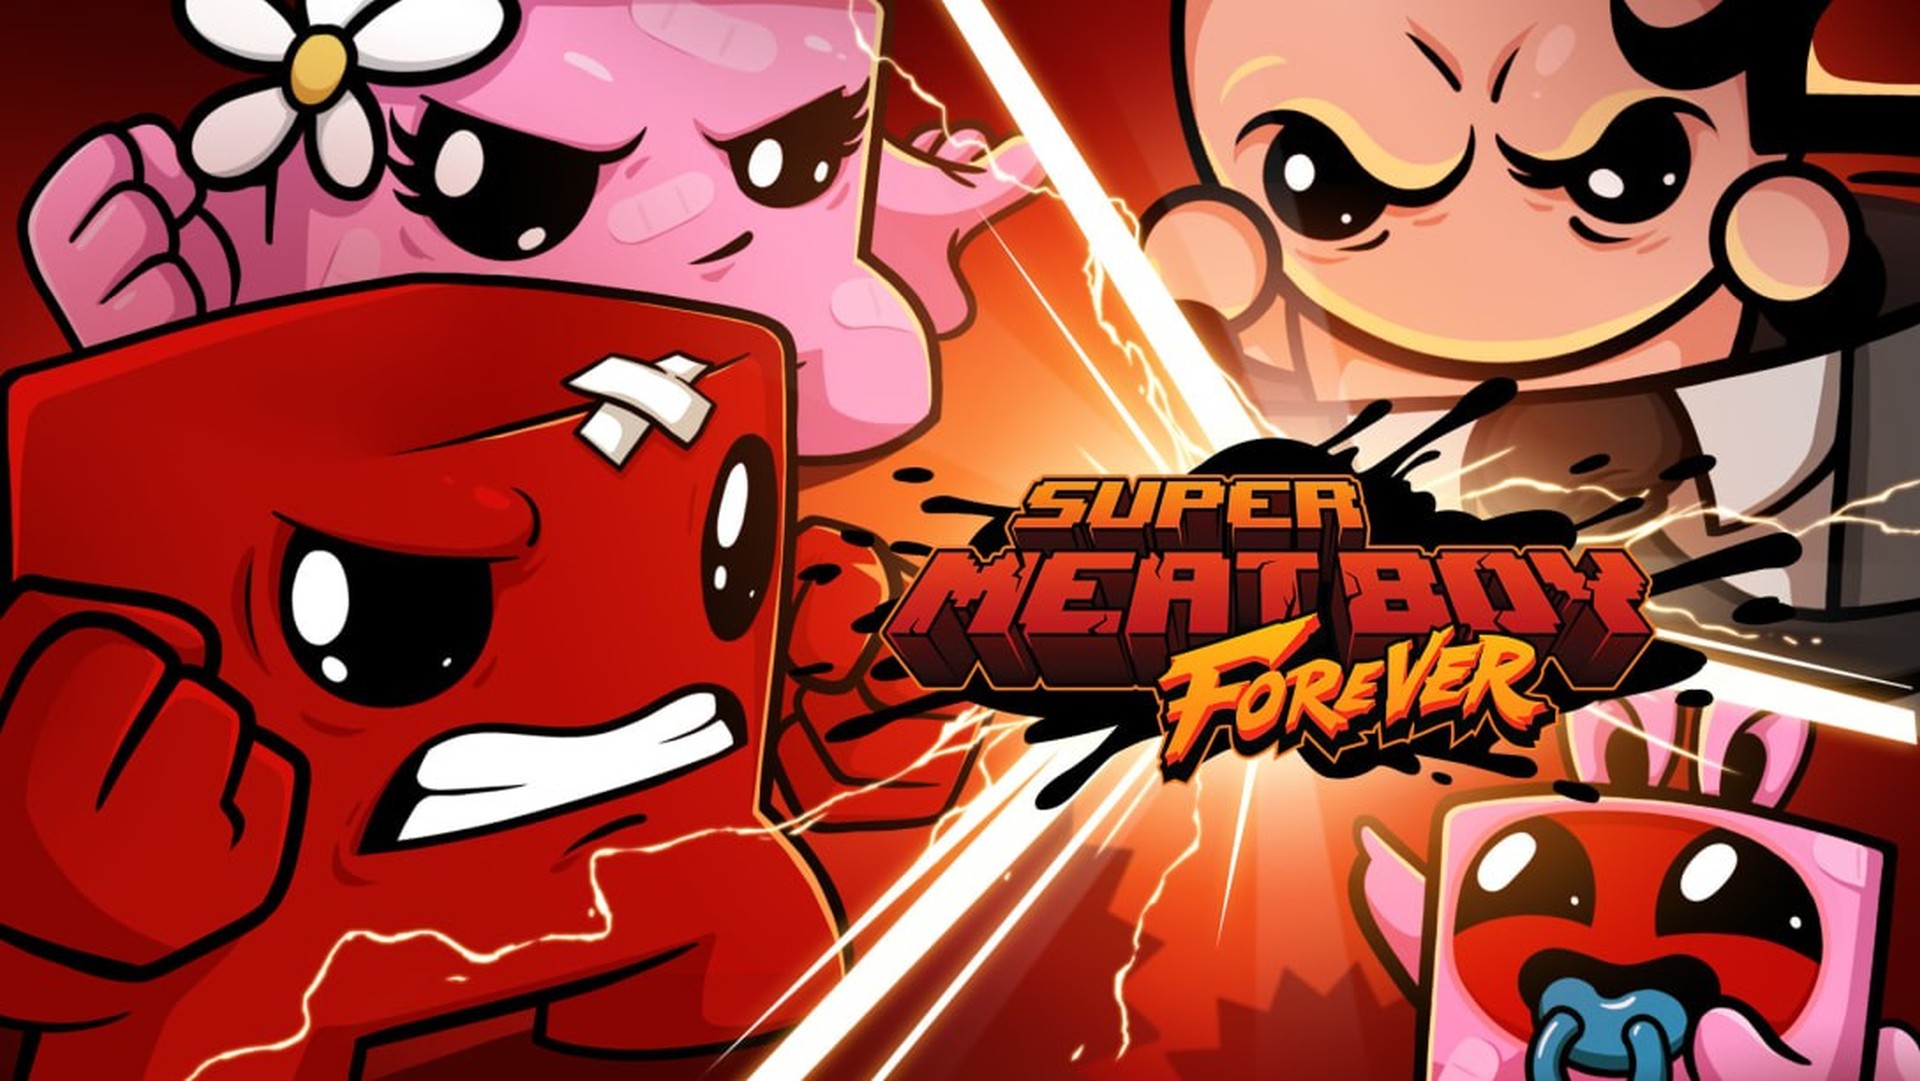 Next Week on Xbox: Neue Spiele vom 12. bis 16. April: Super Meat Boy Forever